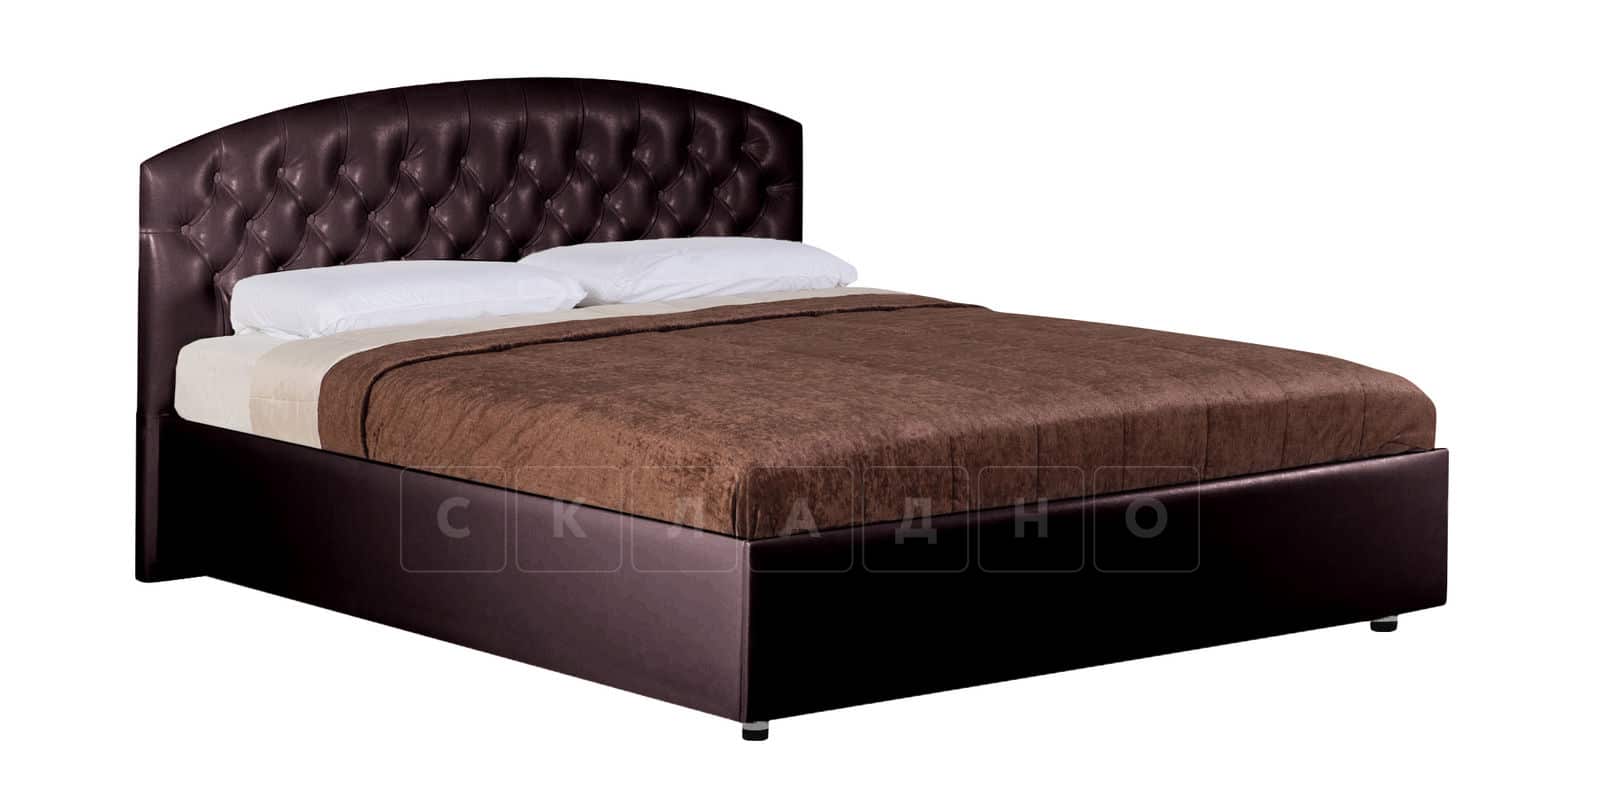 Мягкая кровать Малибу 160 см экокожа шоколадного цвета вариант 1-2 фото 2 | интернет-магазин Складно